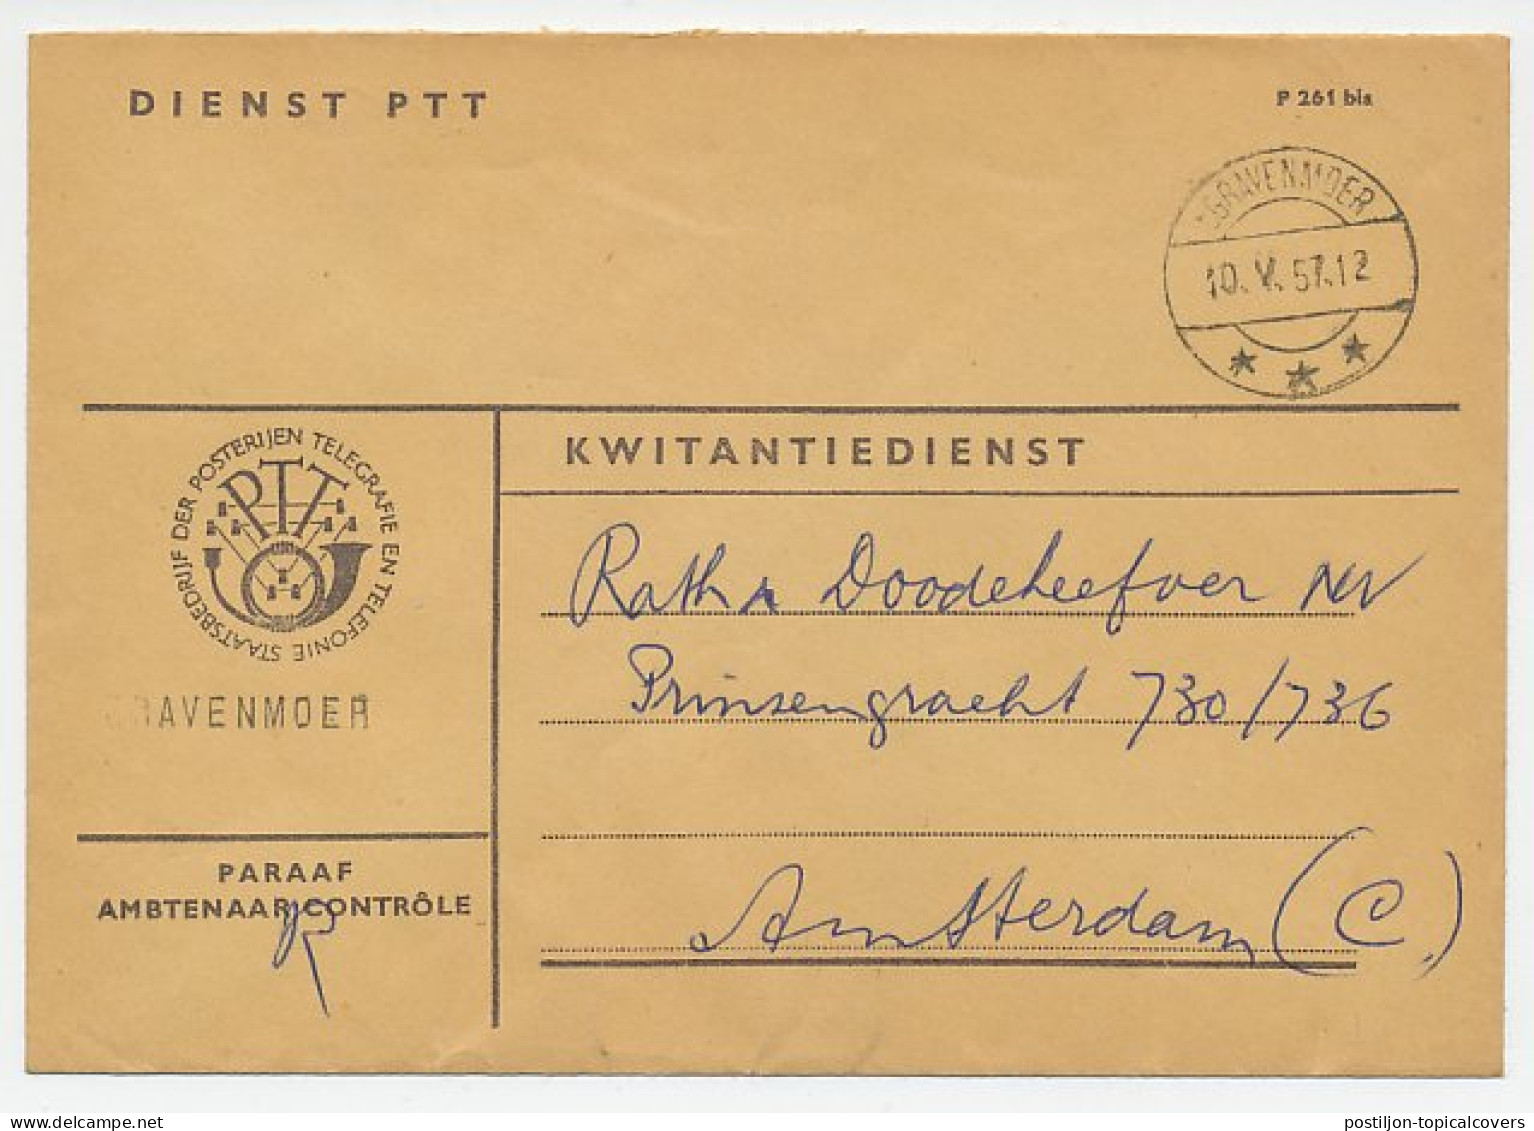 Dienst PTT S Gravenmoer - Amsterdam 1957 - Kwitantiedienst - Ohne Zuordnung